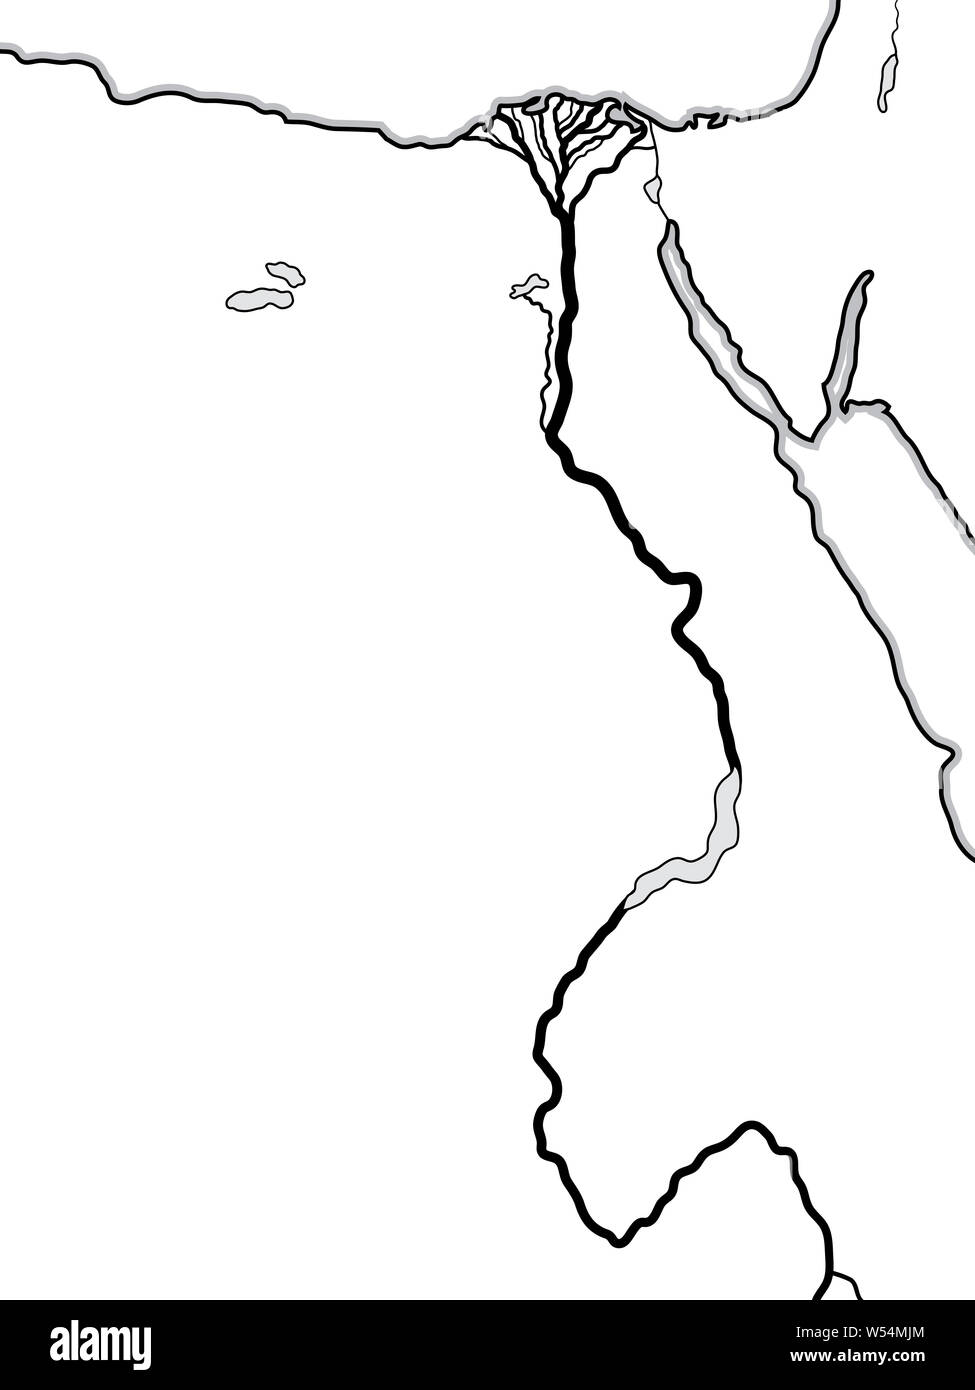 Mappa del mondo di Egitto e Libia: Nord Africa, del Basso Egitto e Alto Egitto, il fiume Nilo e il suo Delta. Grafico geografica con coste & fiume fertile. Foto Stock